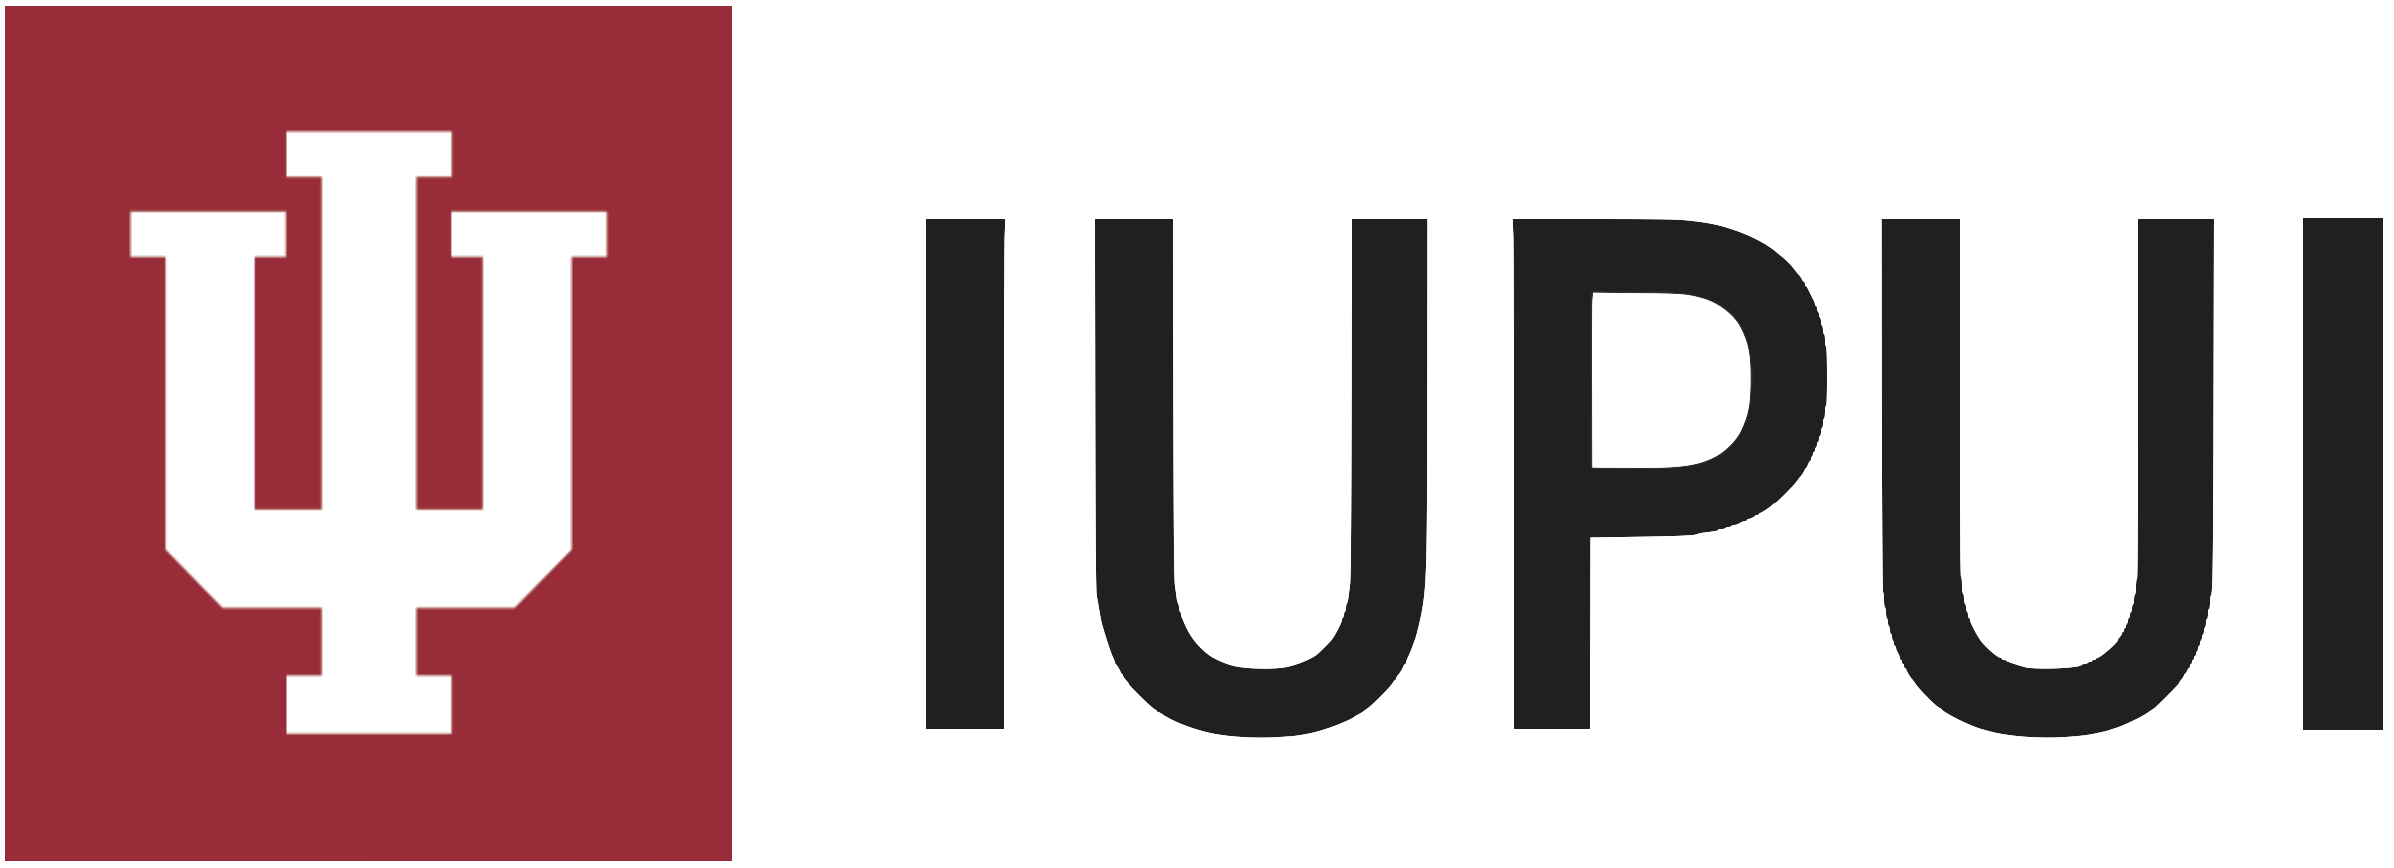 IUPUI logo